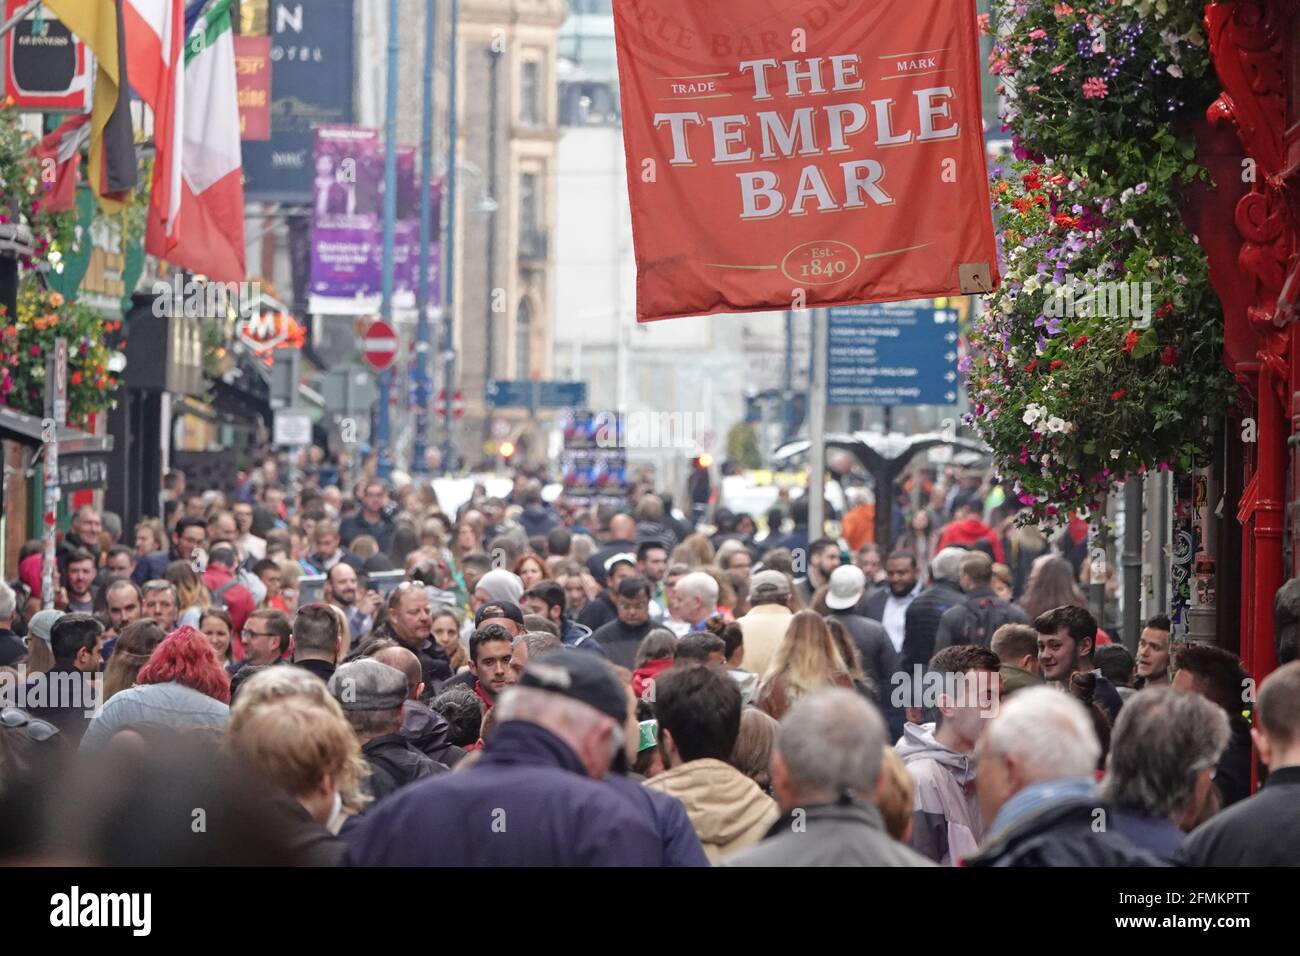 Dublin, Irland - 7. Juni 2019: Eine große Menschenmenge wird entlang der Hauptstraße des berühmten Viertels Temple Bar gezeigt. Nur für redaktionelle Zwecke. Stockfoto